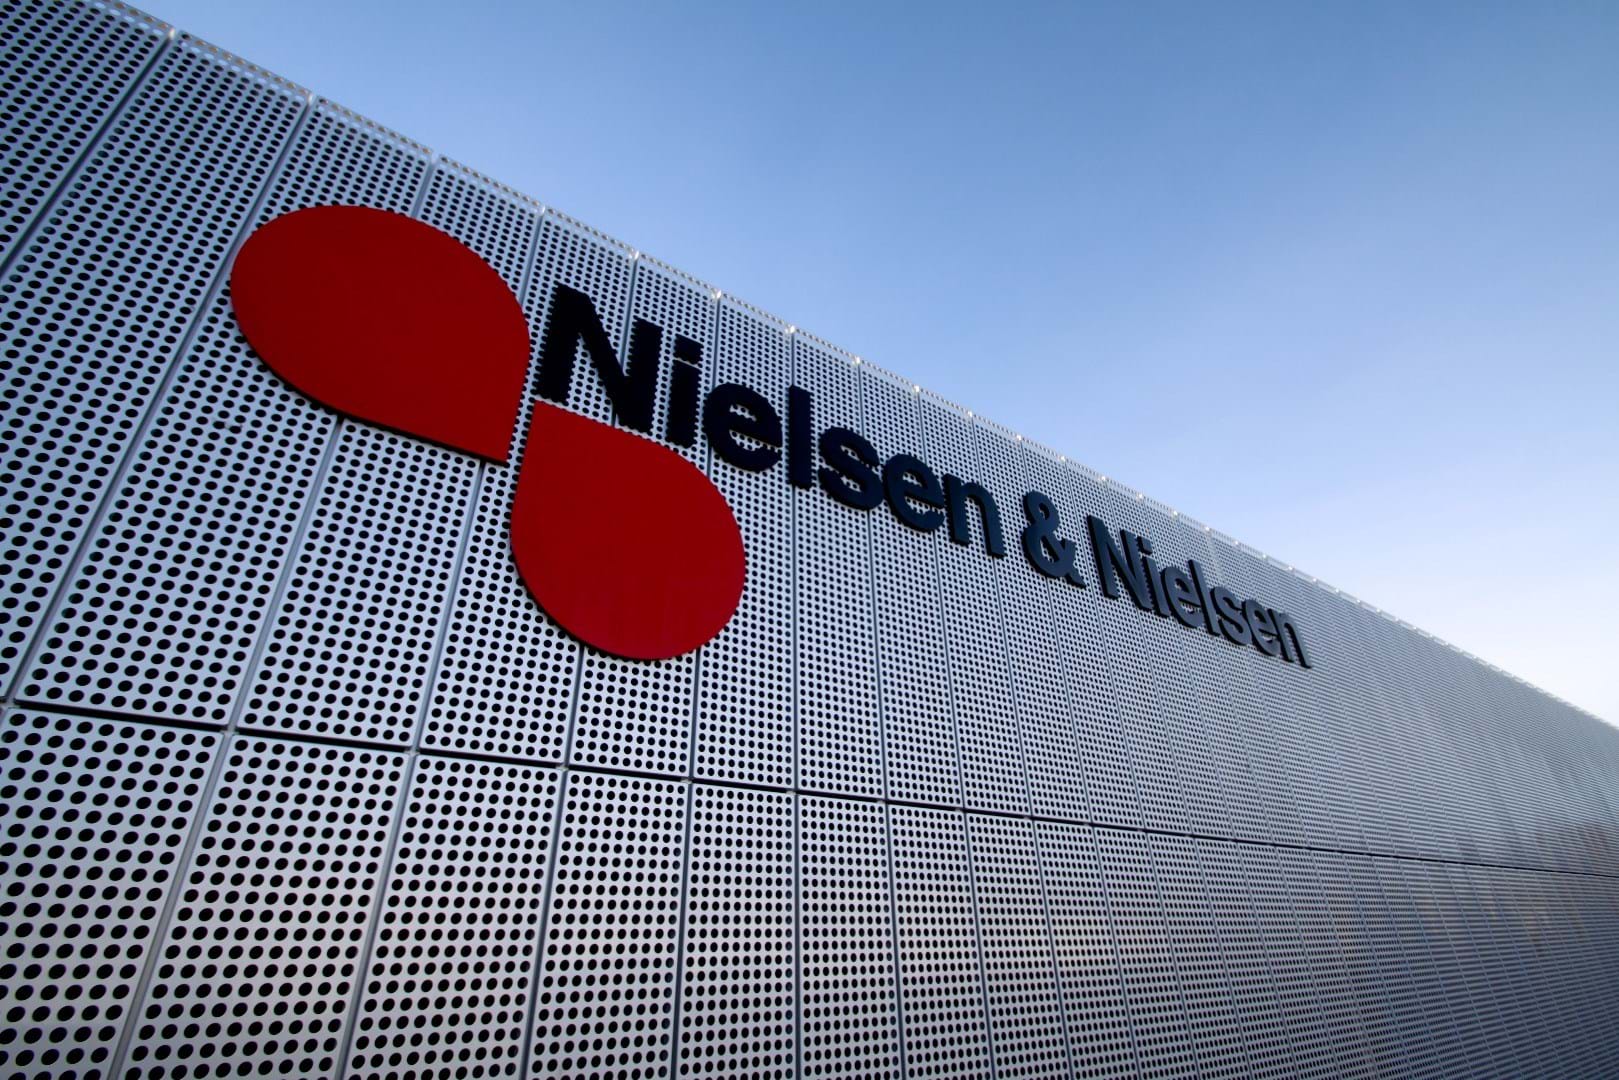 Nielsen & Nielsen, Denemark